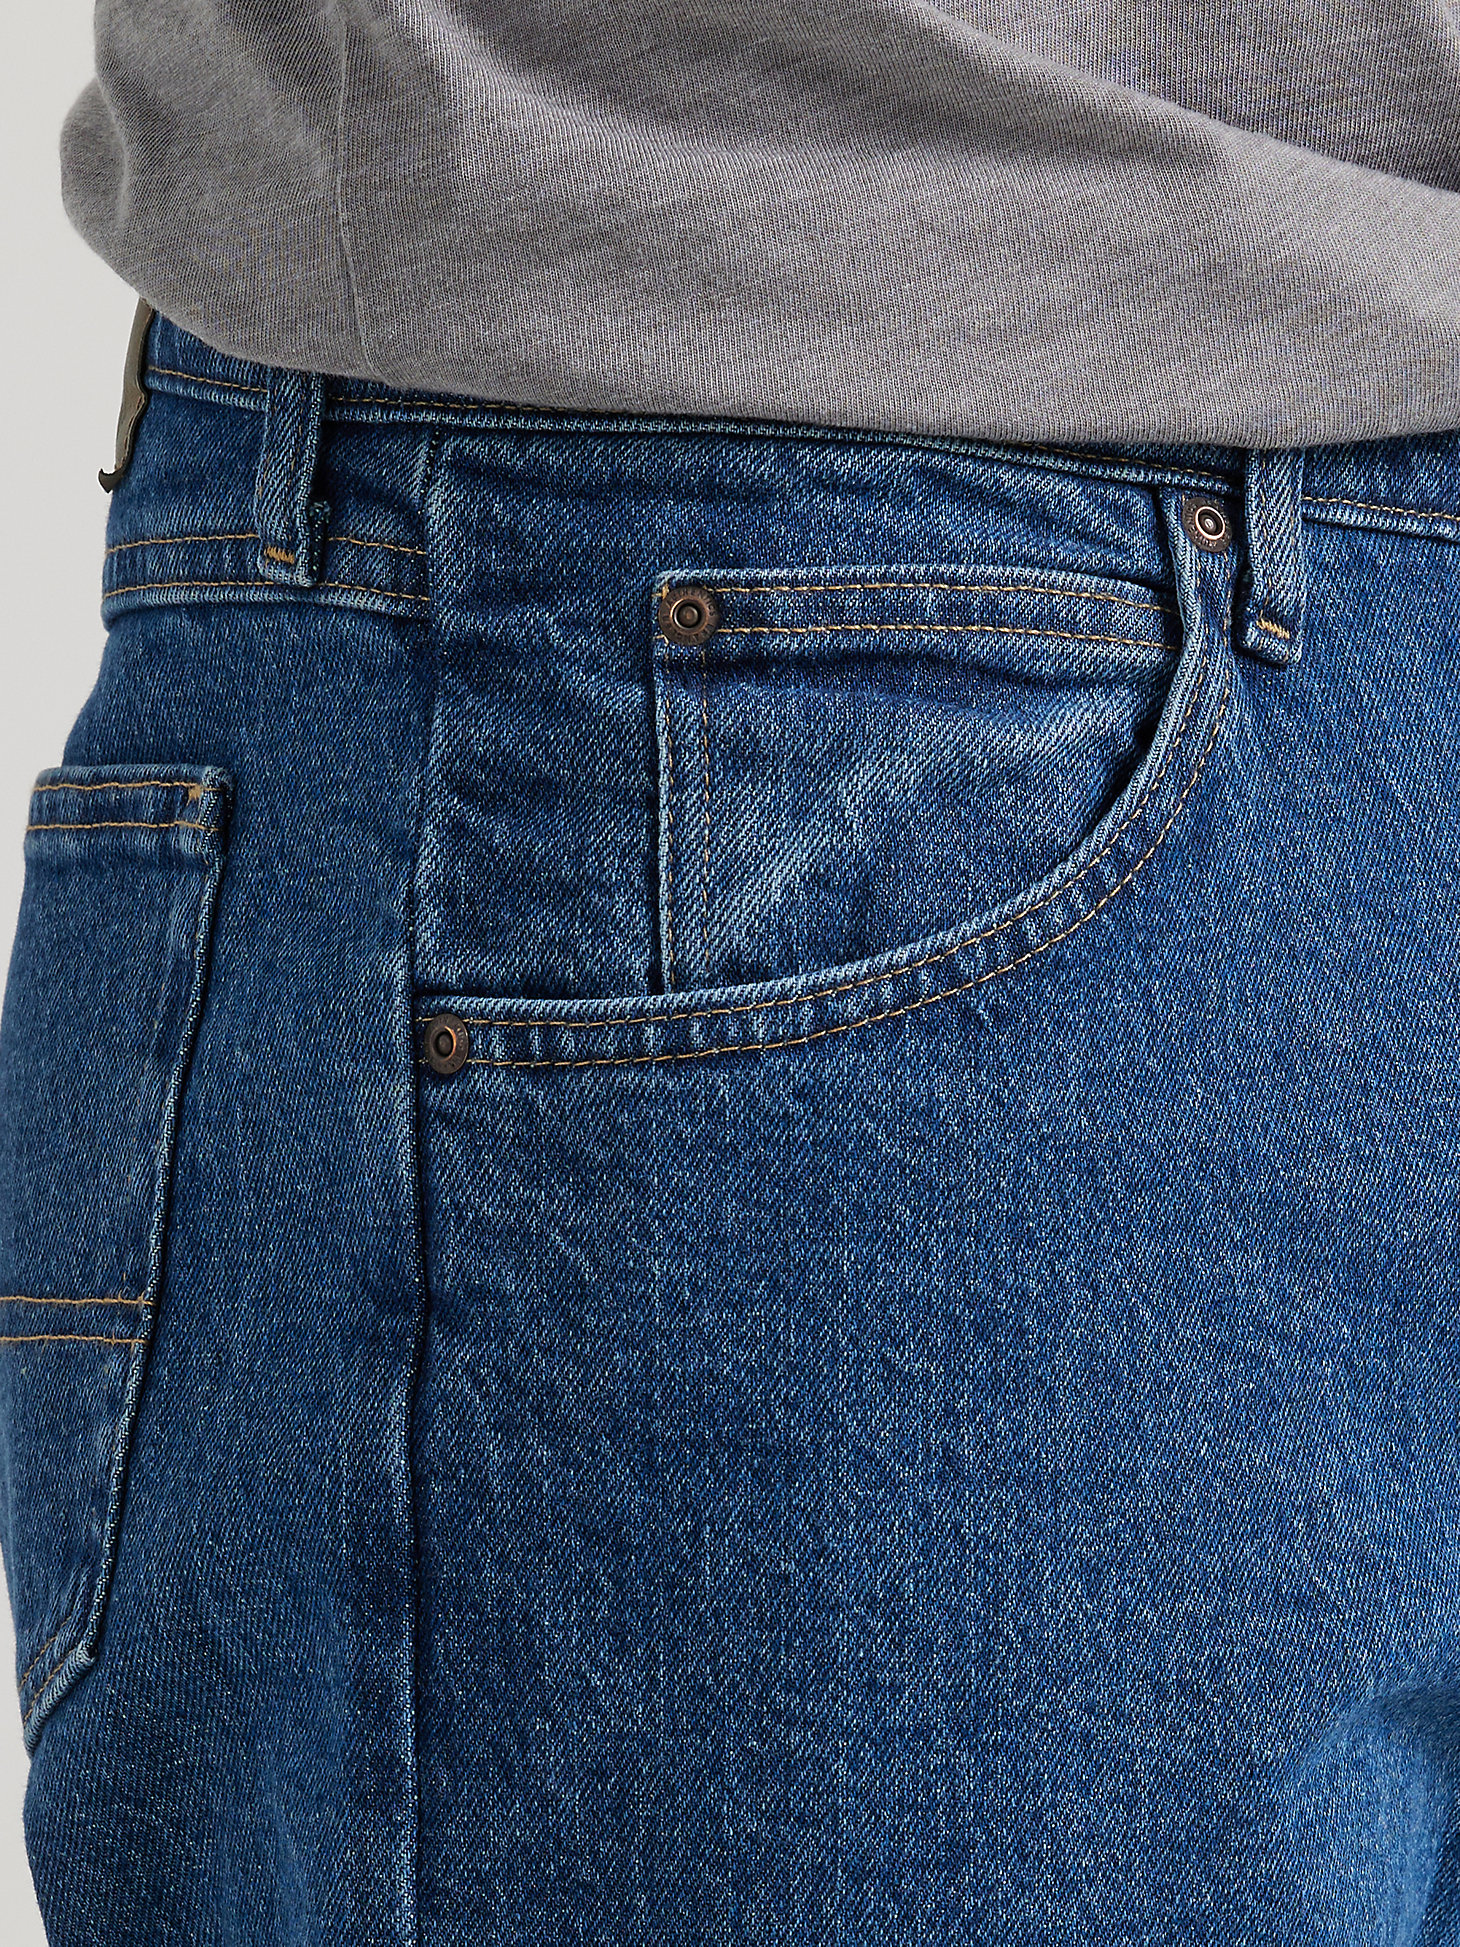 Men's Wrangler Authentics® Relaxed Fit Flex Jean in Dark Stonewash alternative view 4